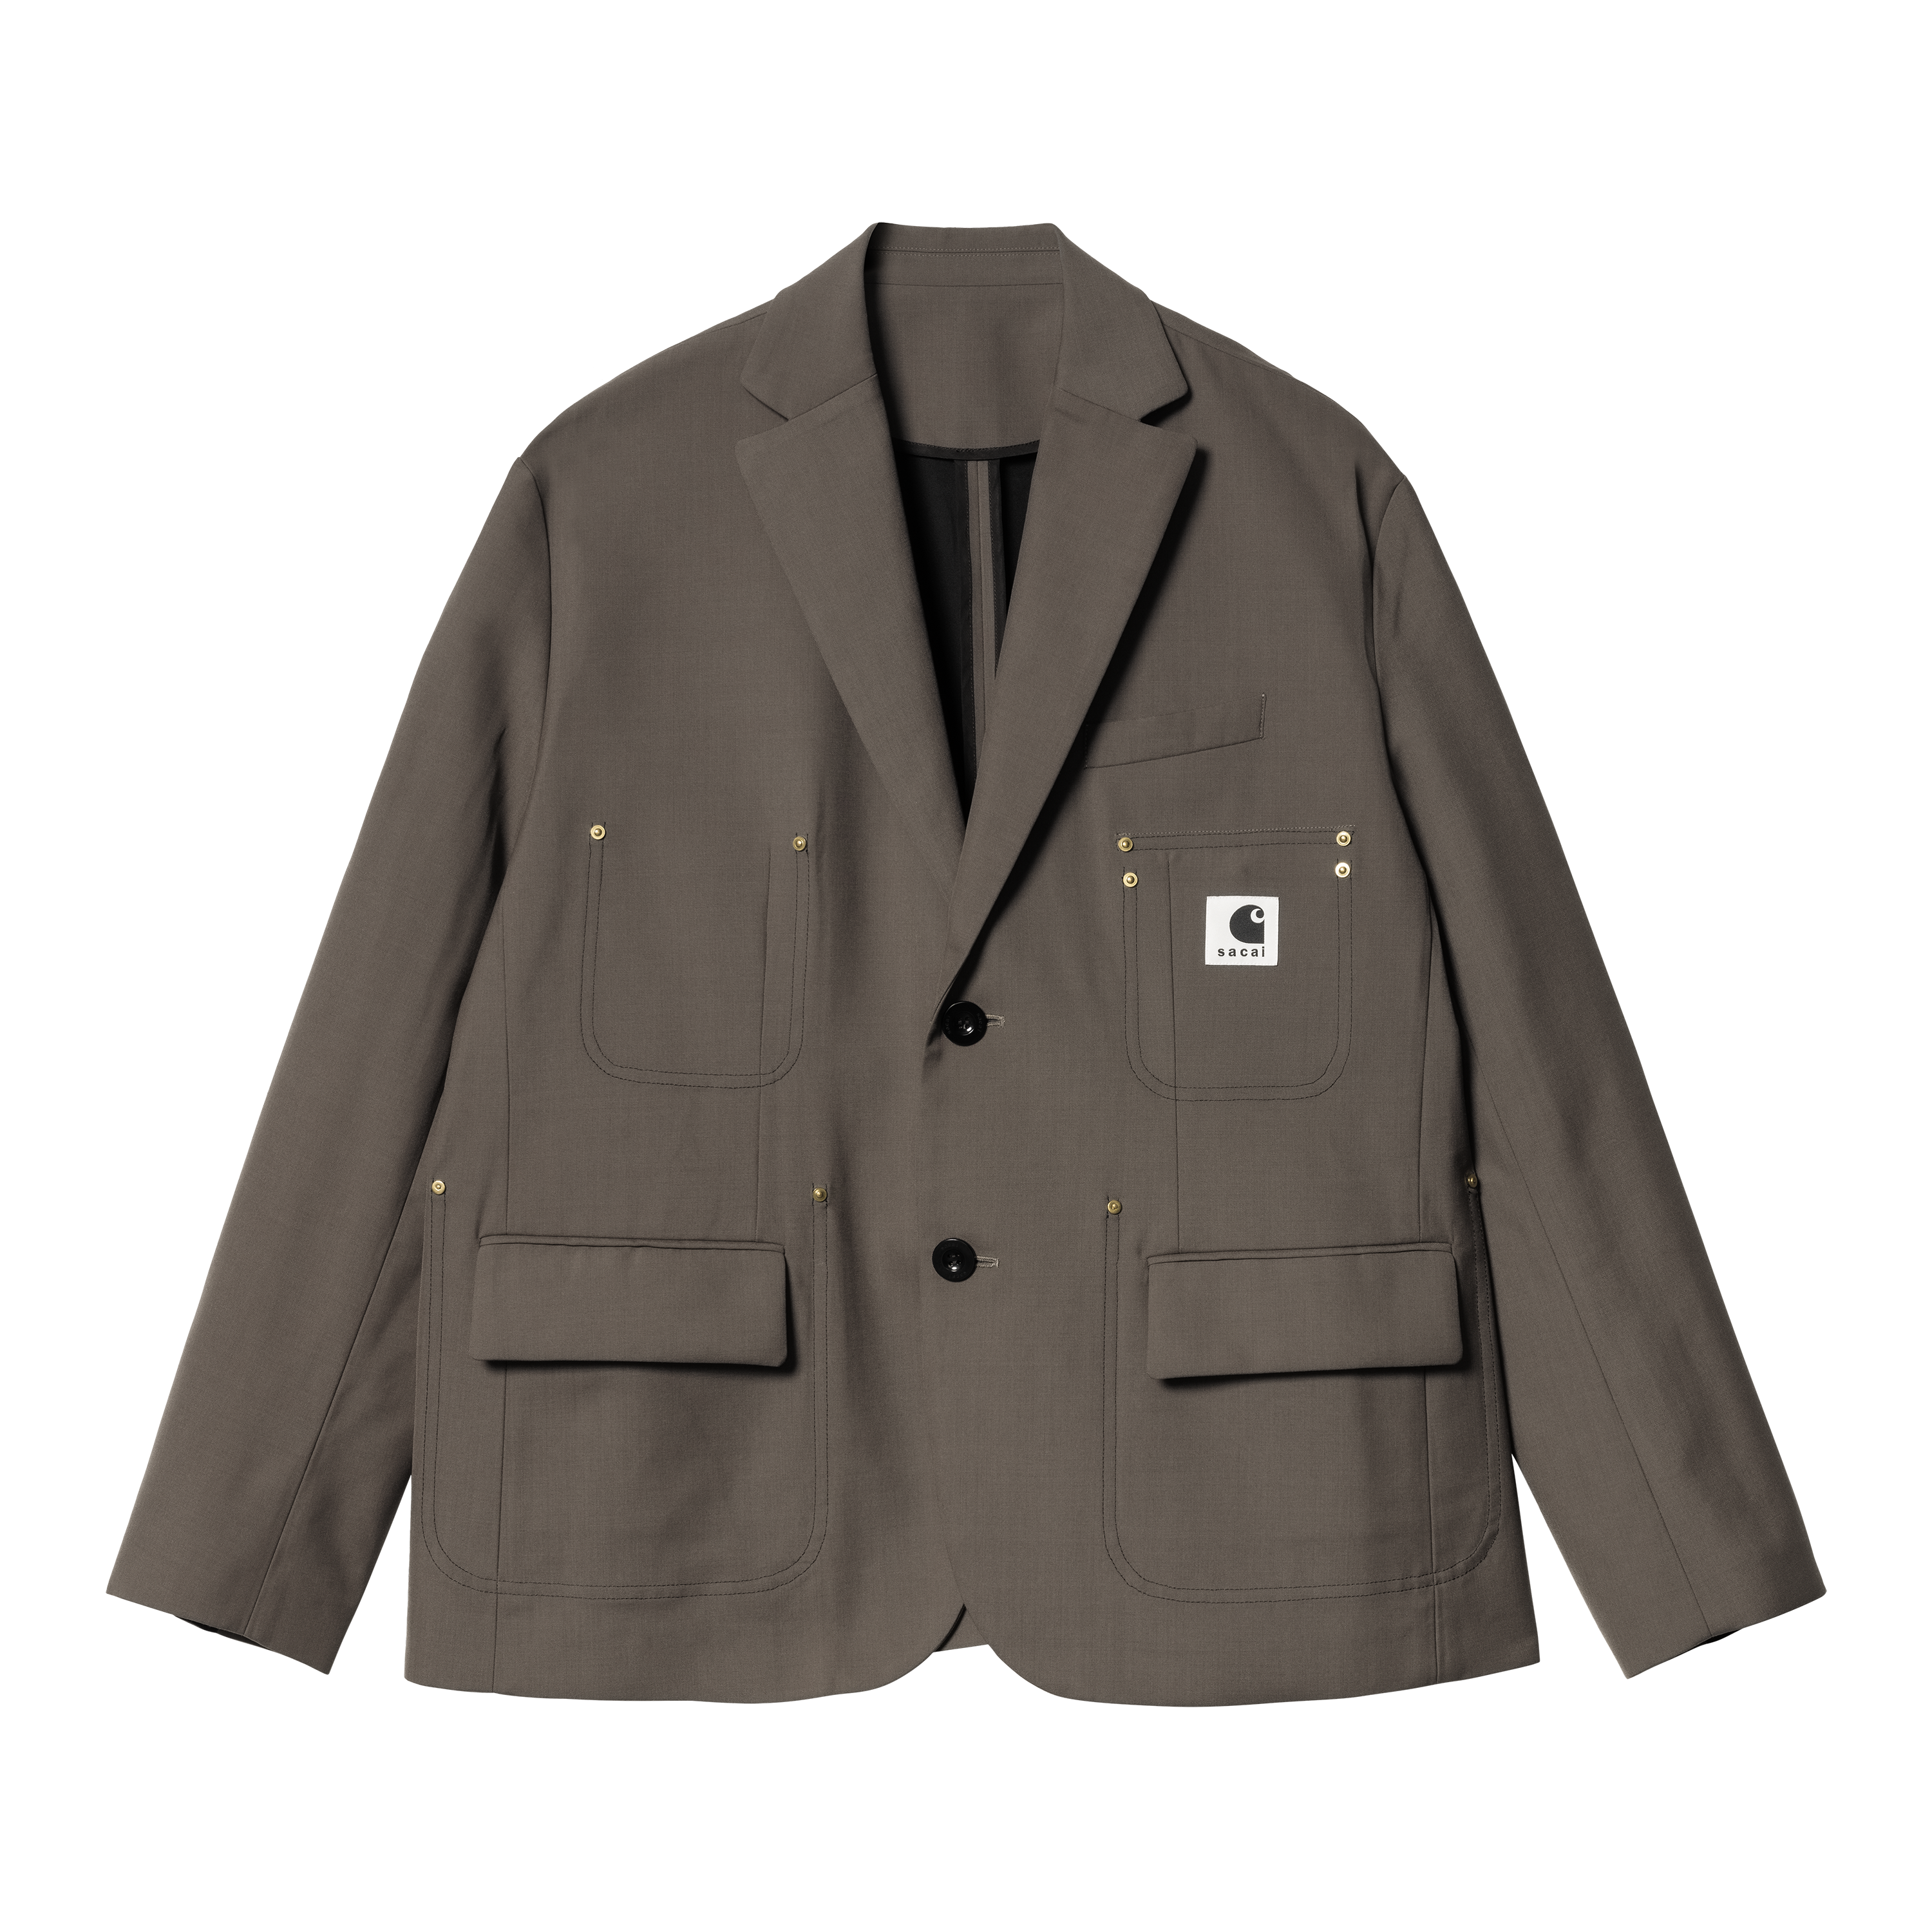 Carhartt WIP sacai x Carhartt WIP Suiting Bonding Jacket in Brown